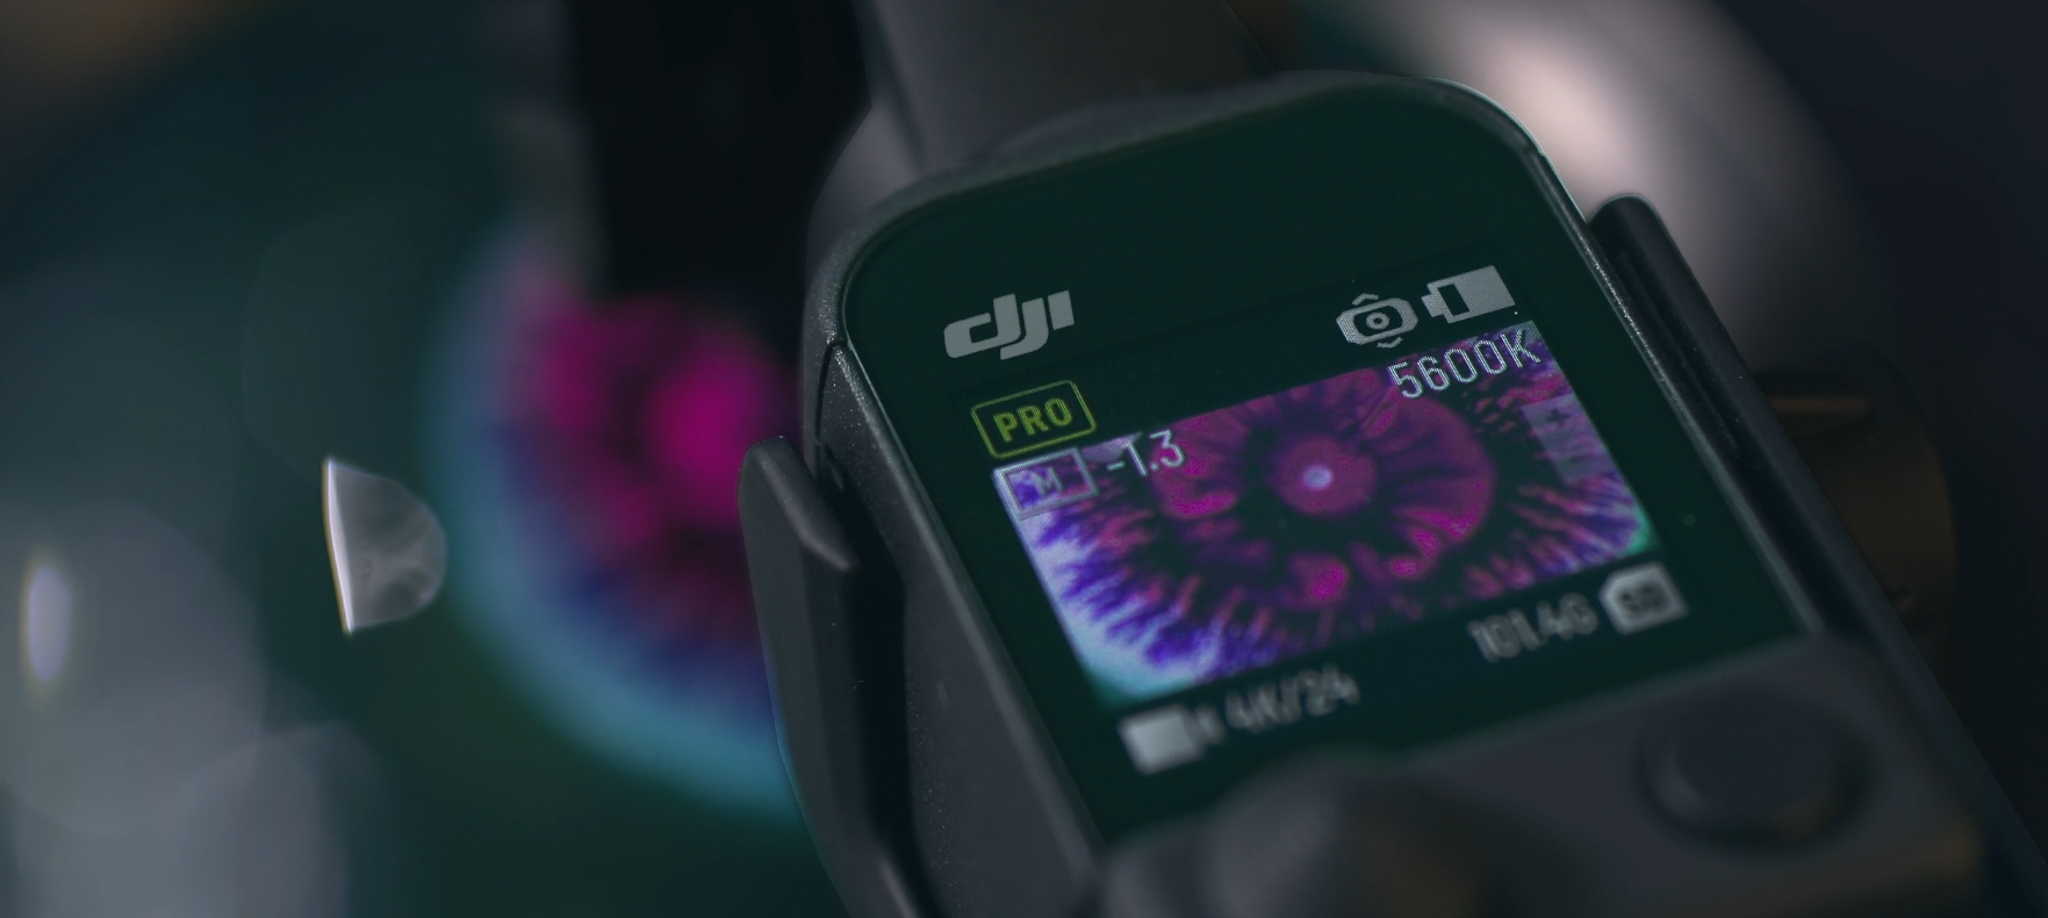 Chiêm ngưỡng khả năng quay cận cảnh ấn tượng từ DJI Pocket 2 qua đoạn video "Origin" đầy màu sắc